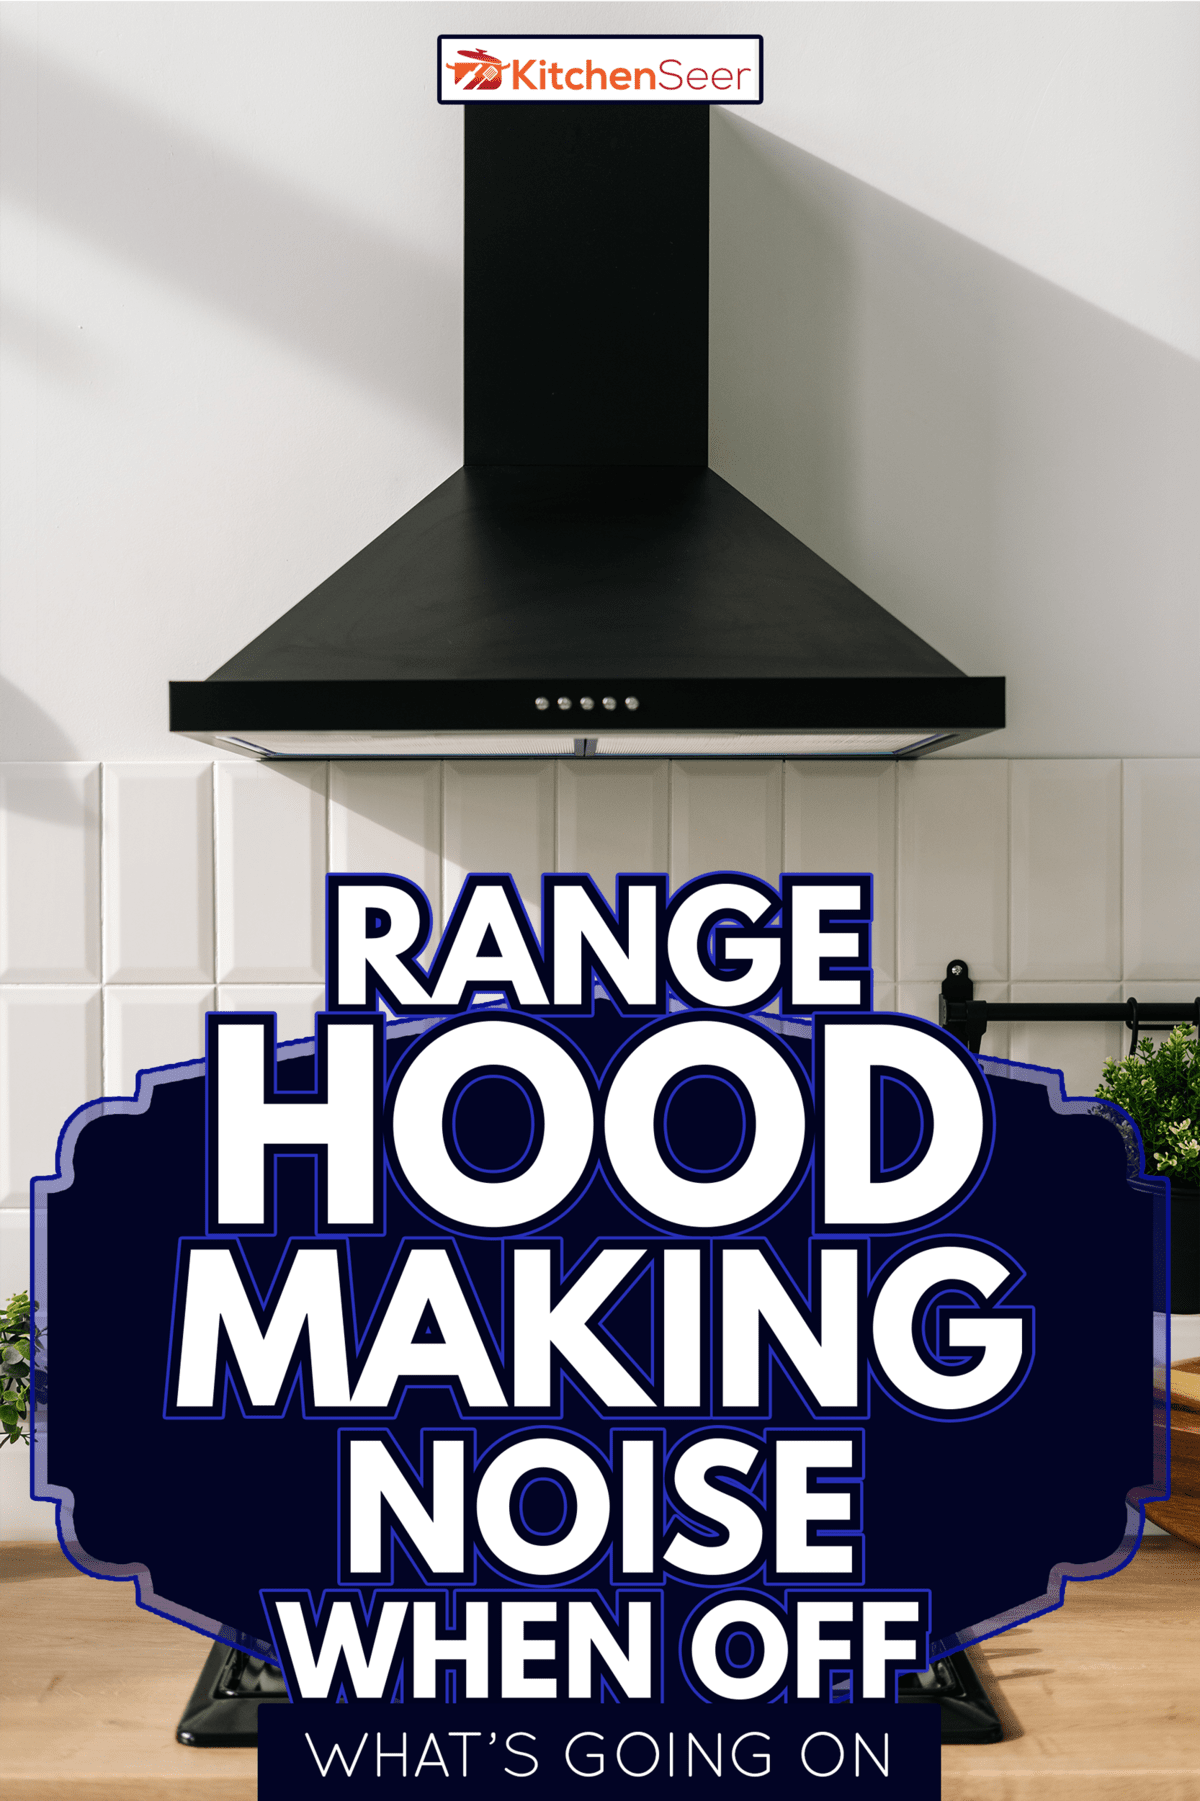 Range hood - Range Hood Making Noise When Off - What's Going On